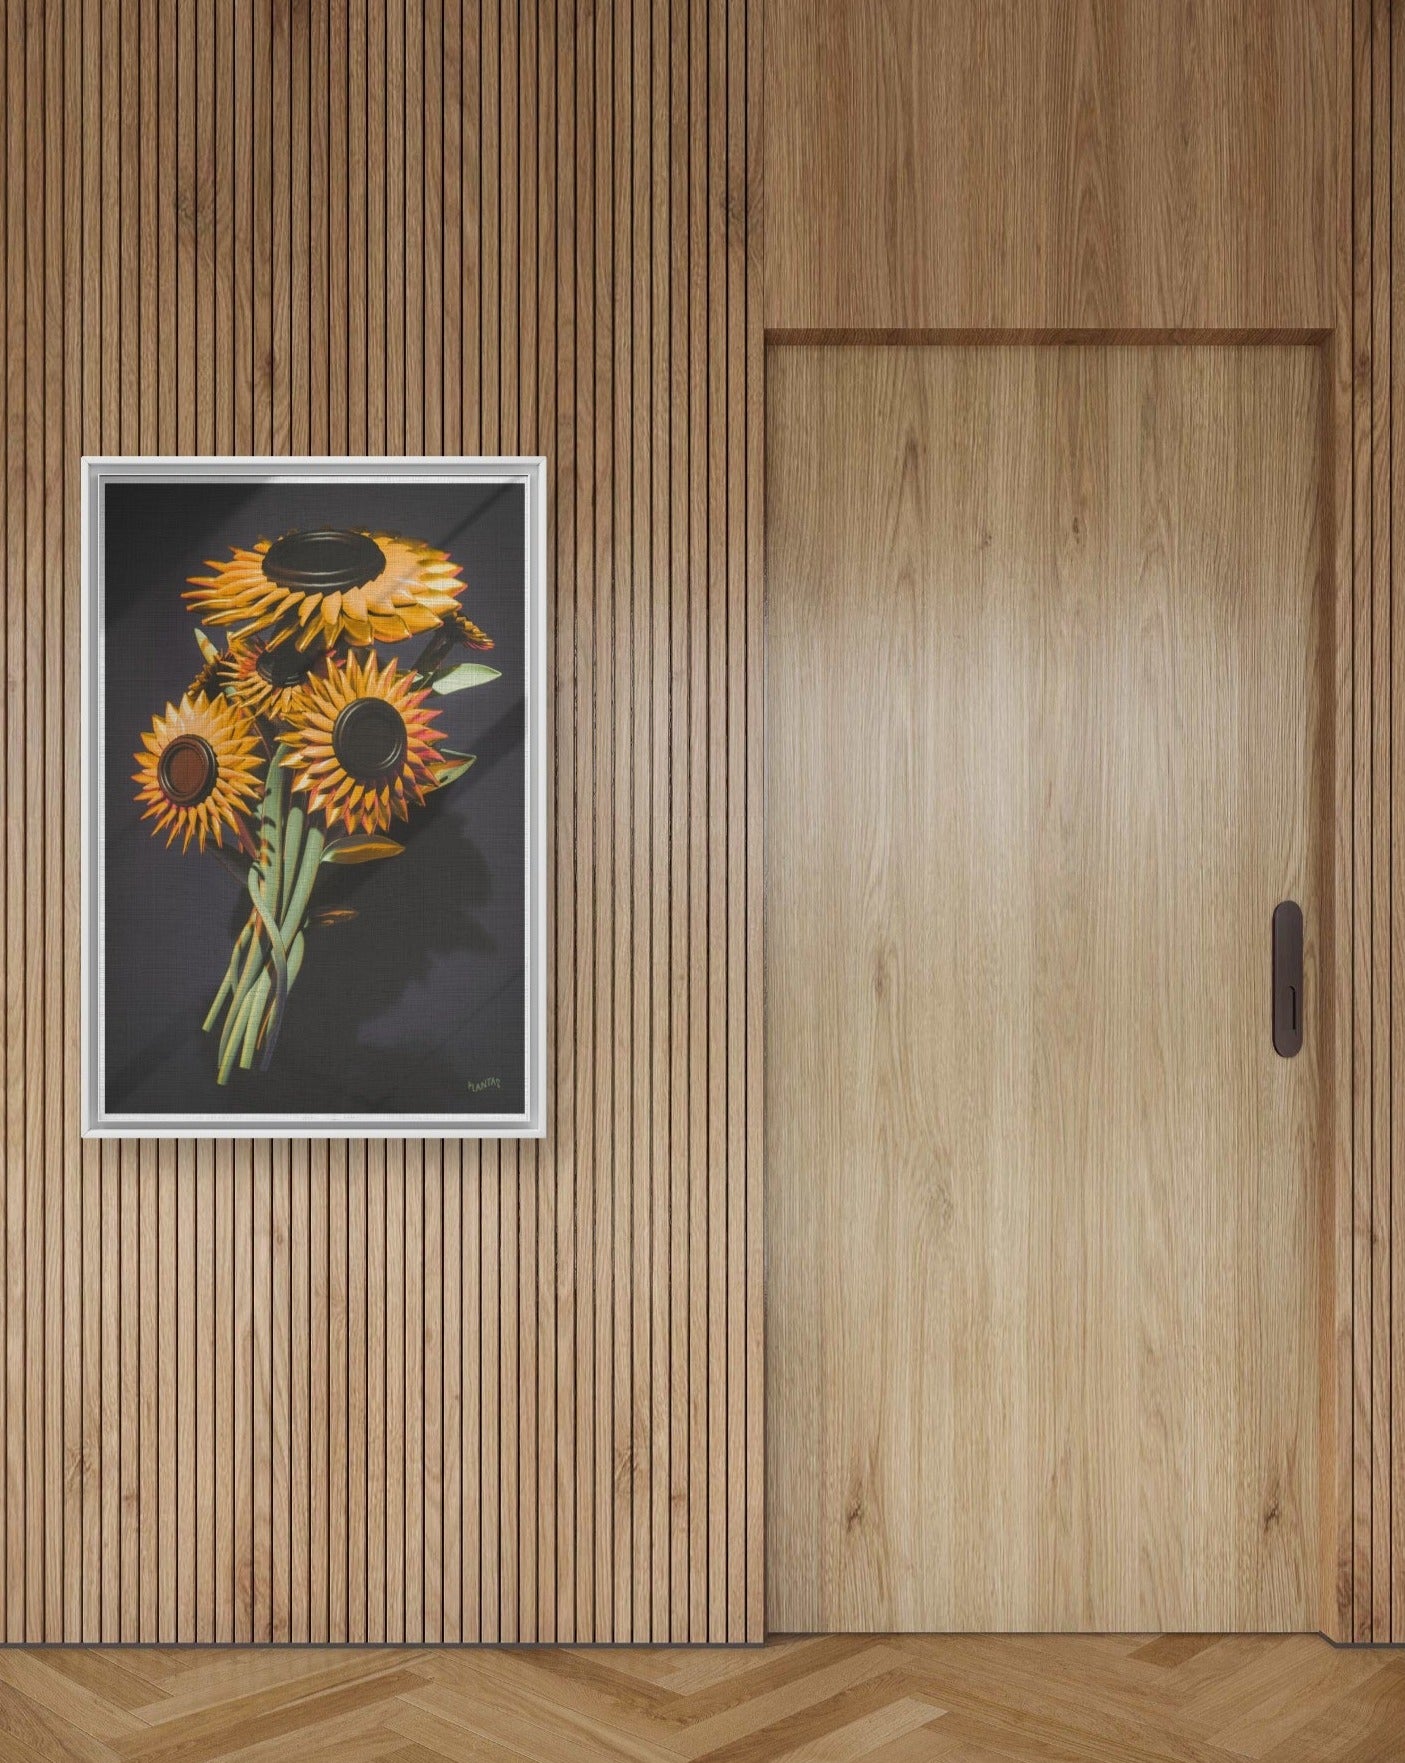 Sun flowers 24"x36" Framed Canvas